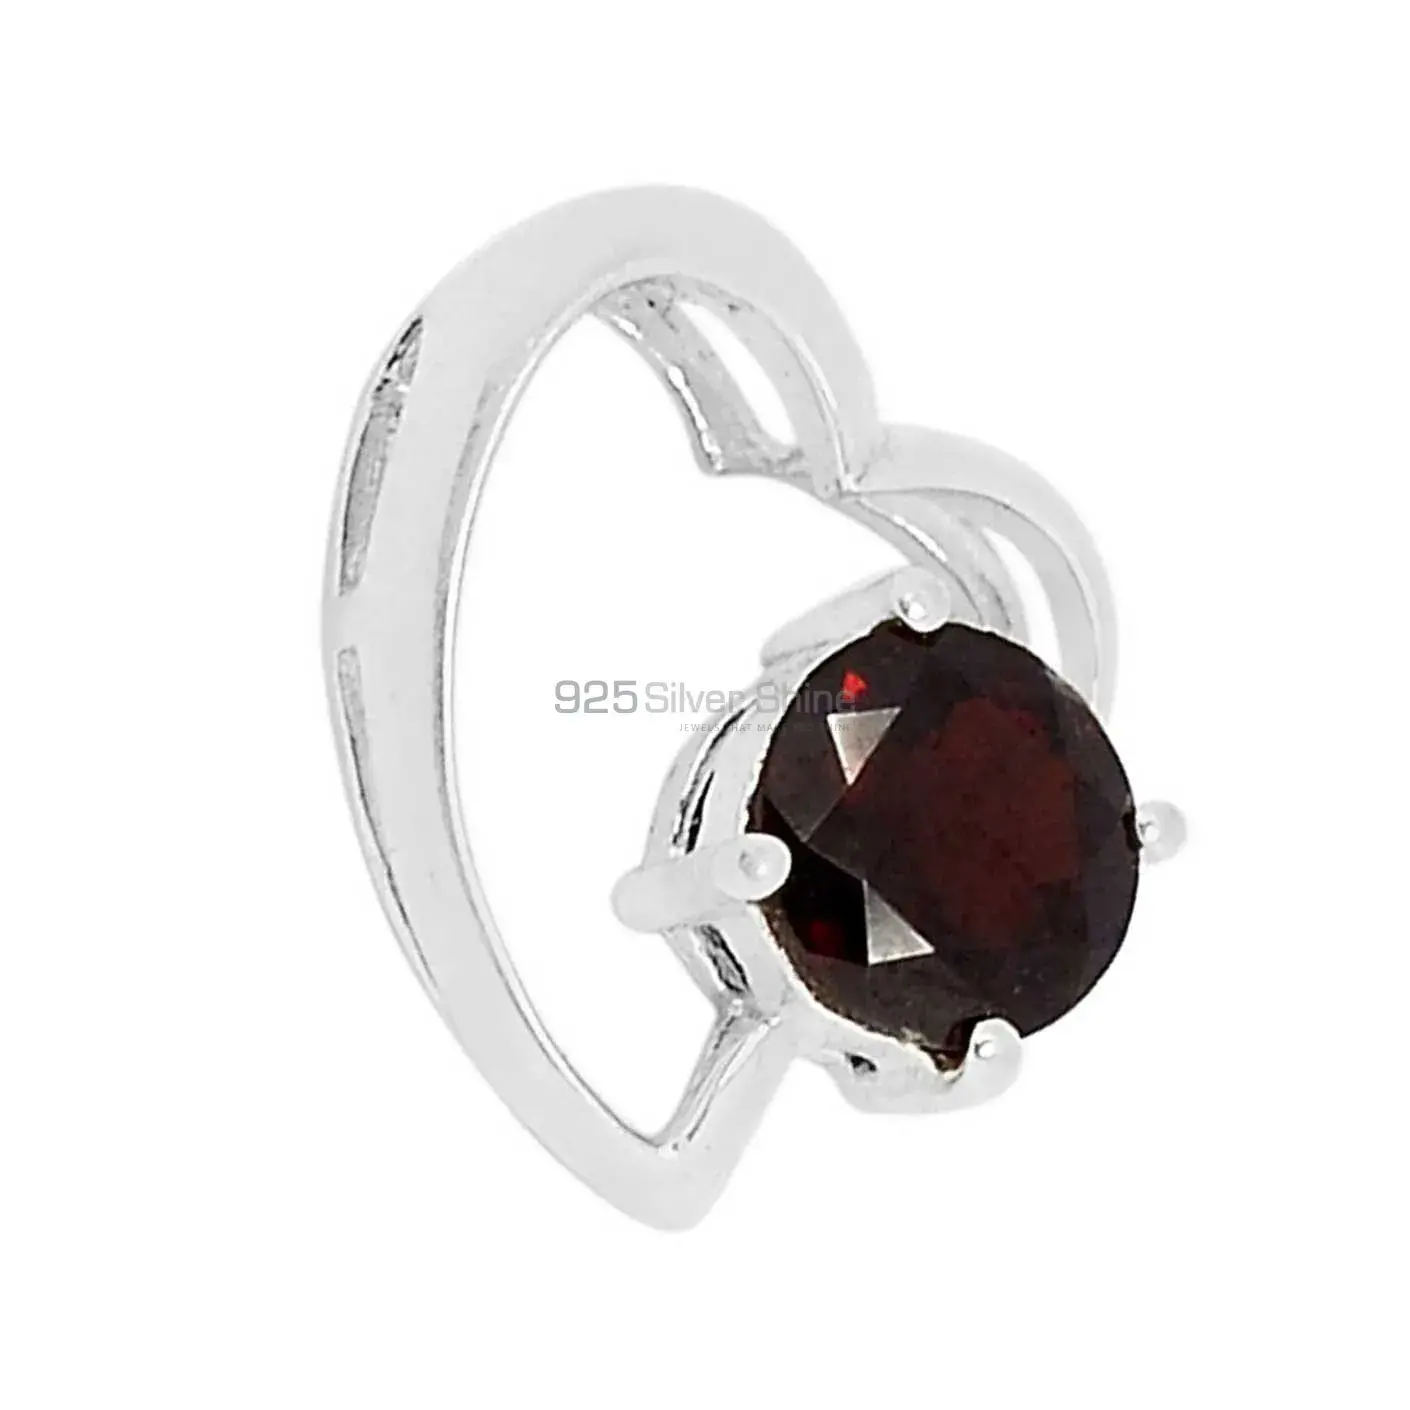 Wholesale Garnet Gemstone Pendants In Fine Sterling Silver Jewelry 925SSP310-5_0